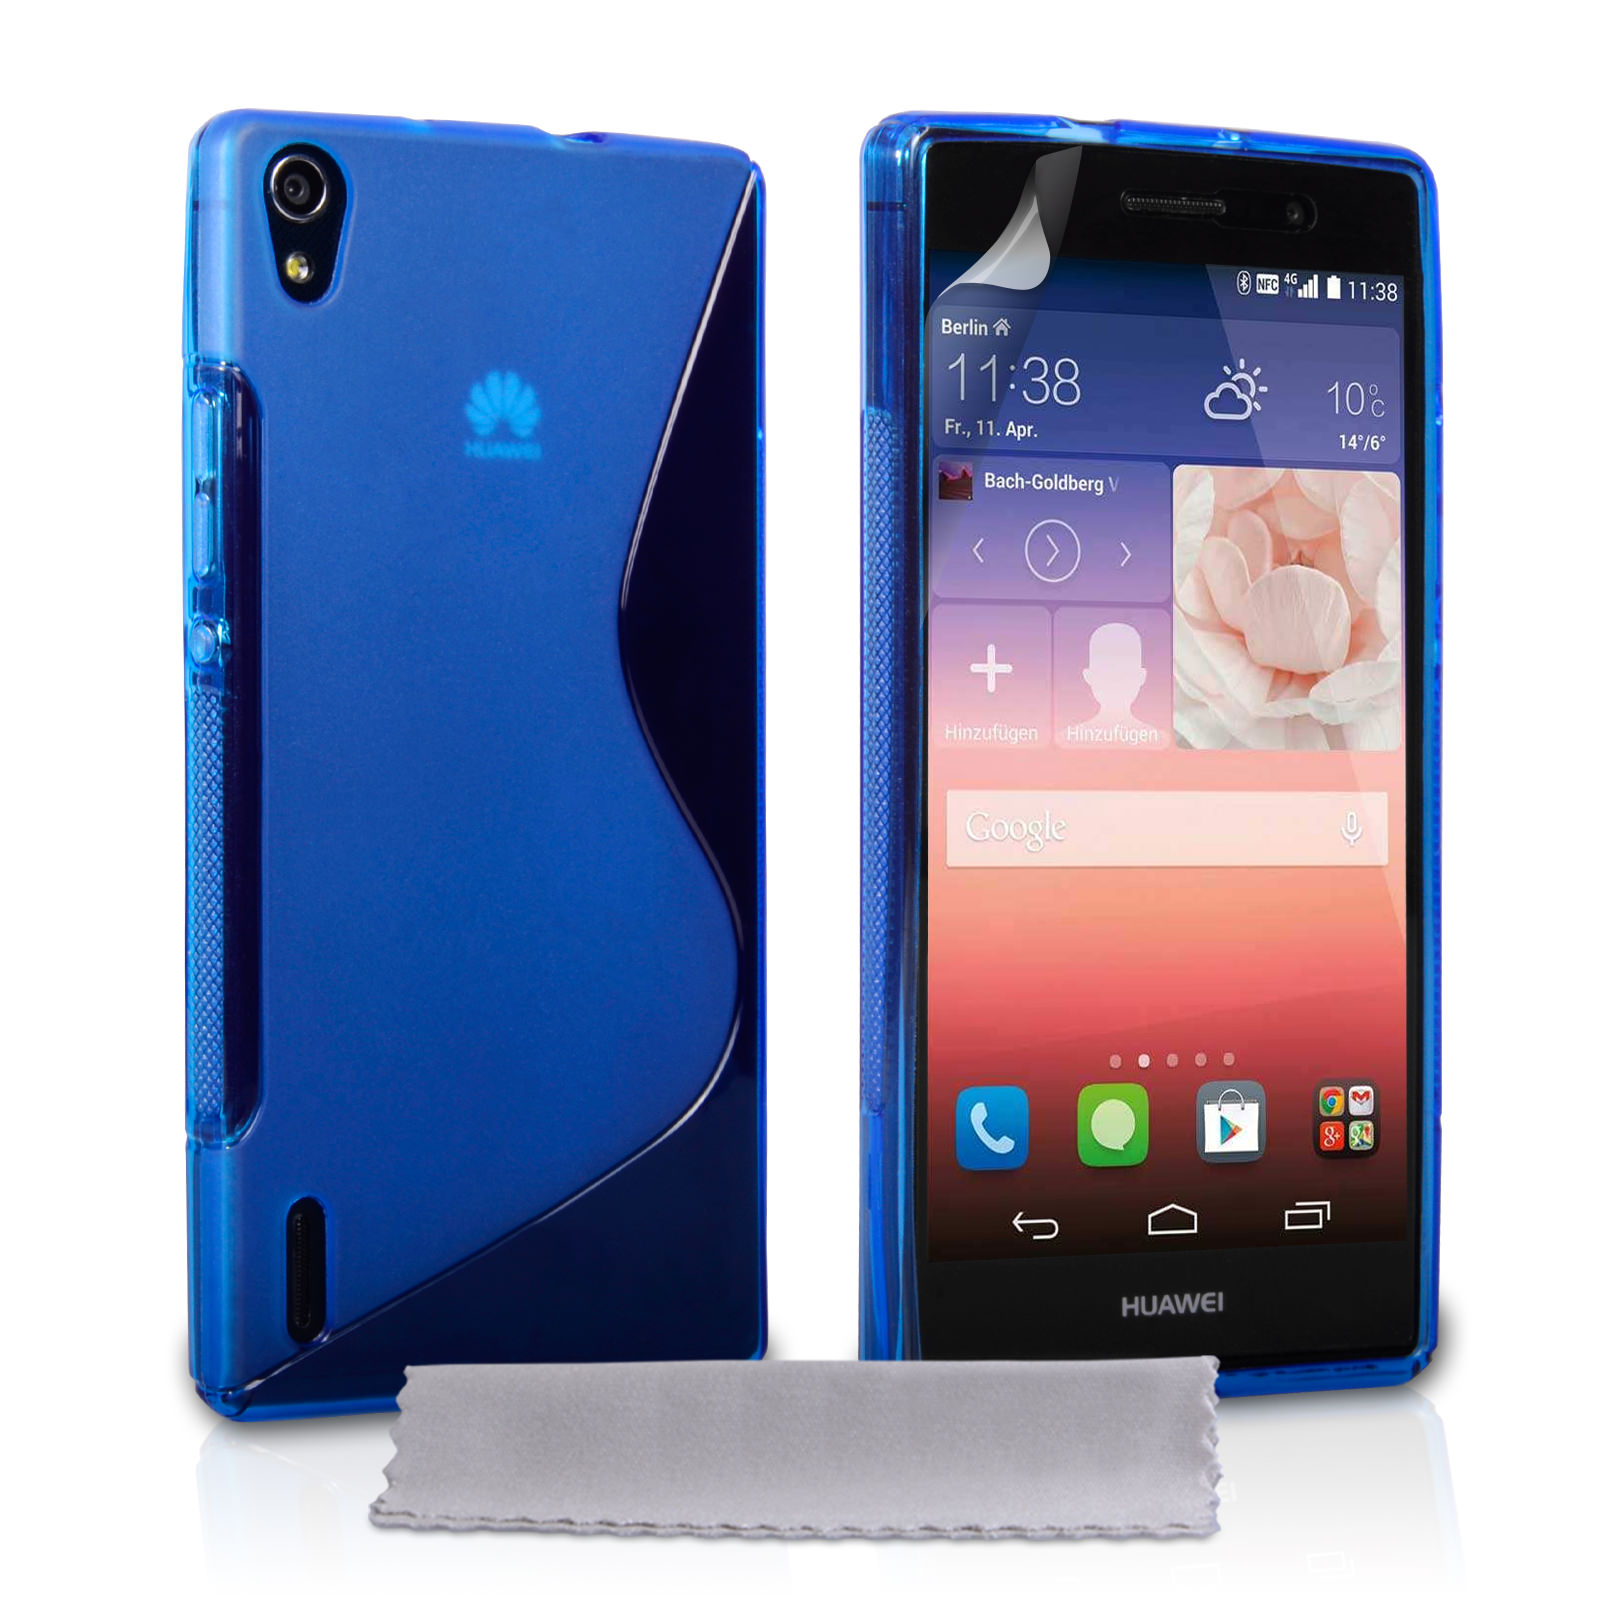 Caseflex Huawei Ascend P7 Silicone Gel S-Line Case - Blue